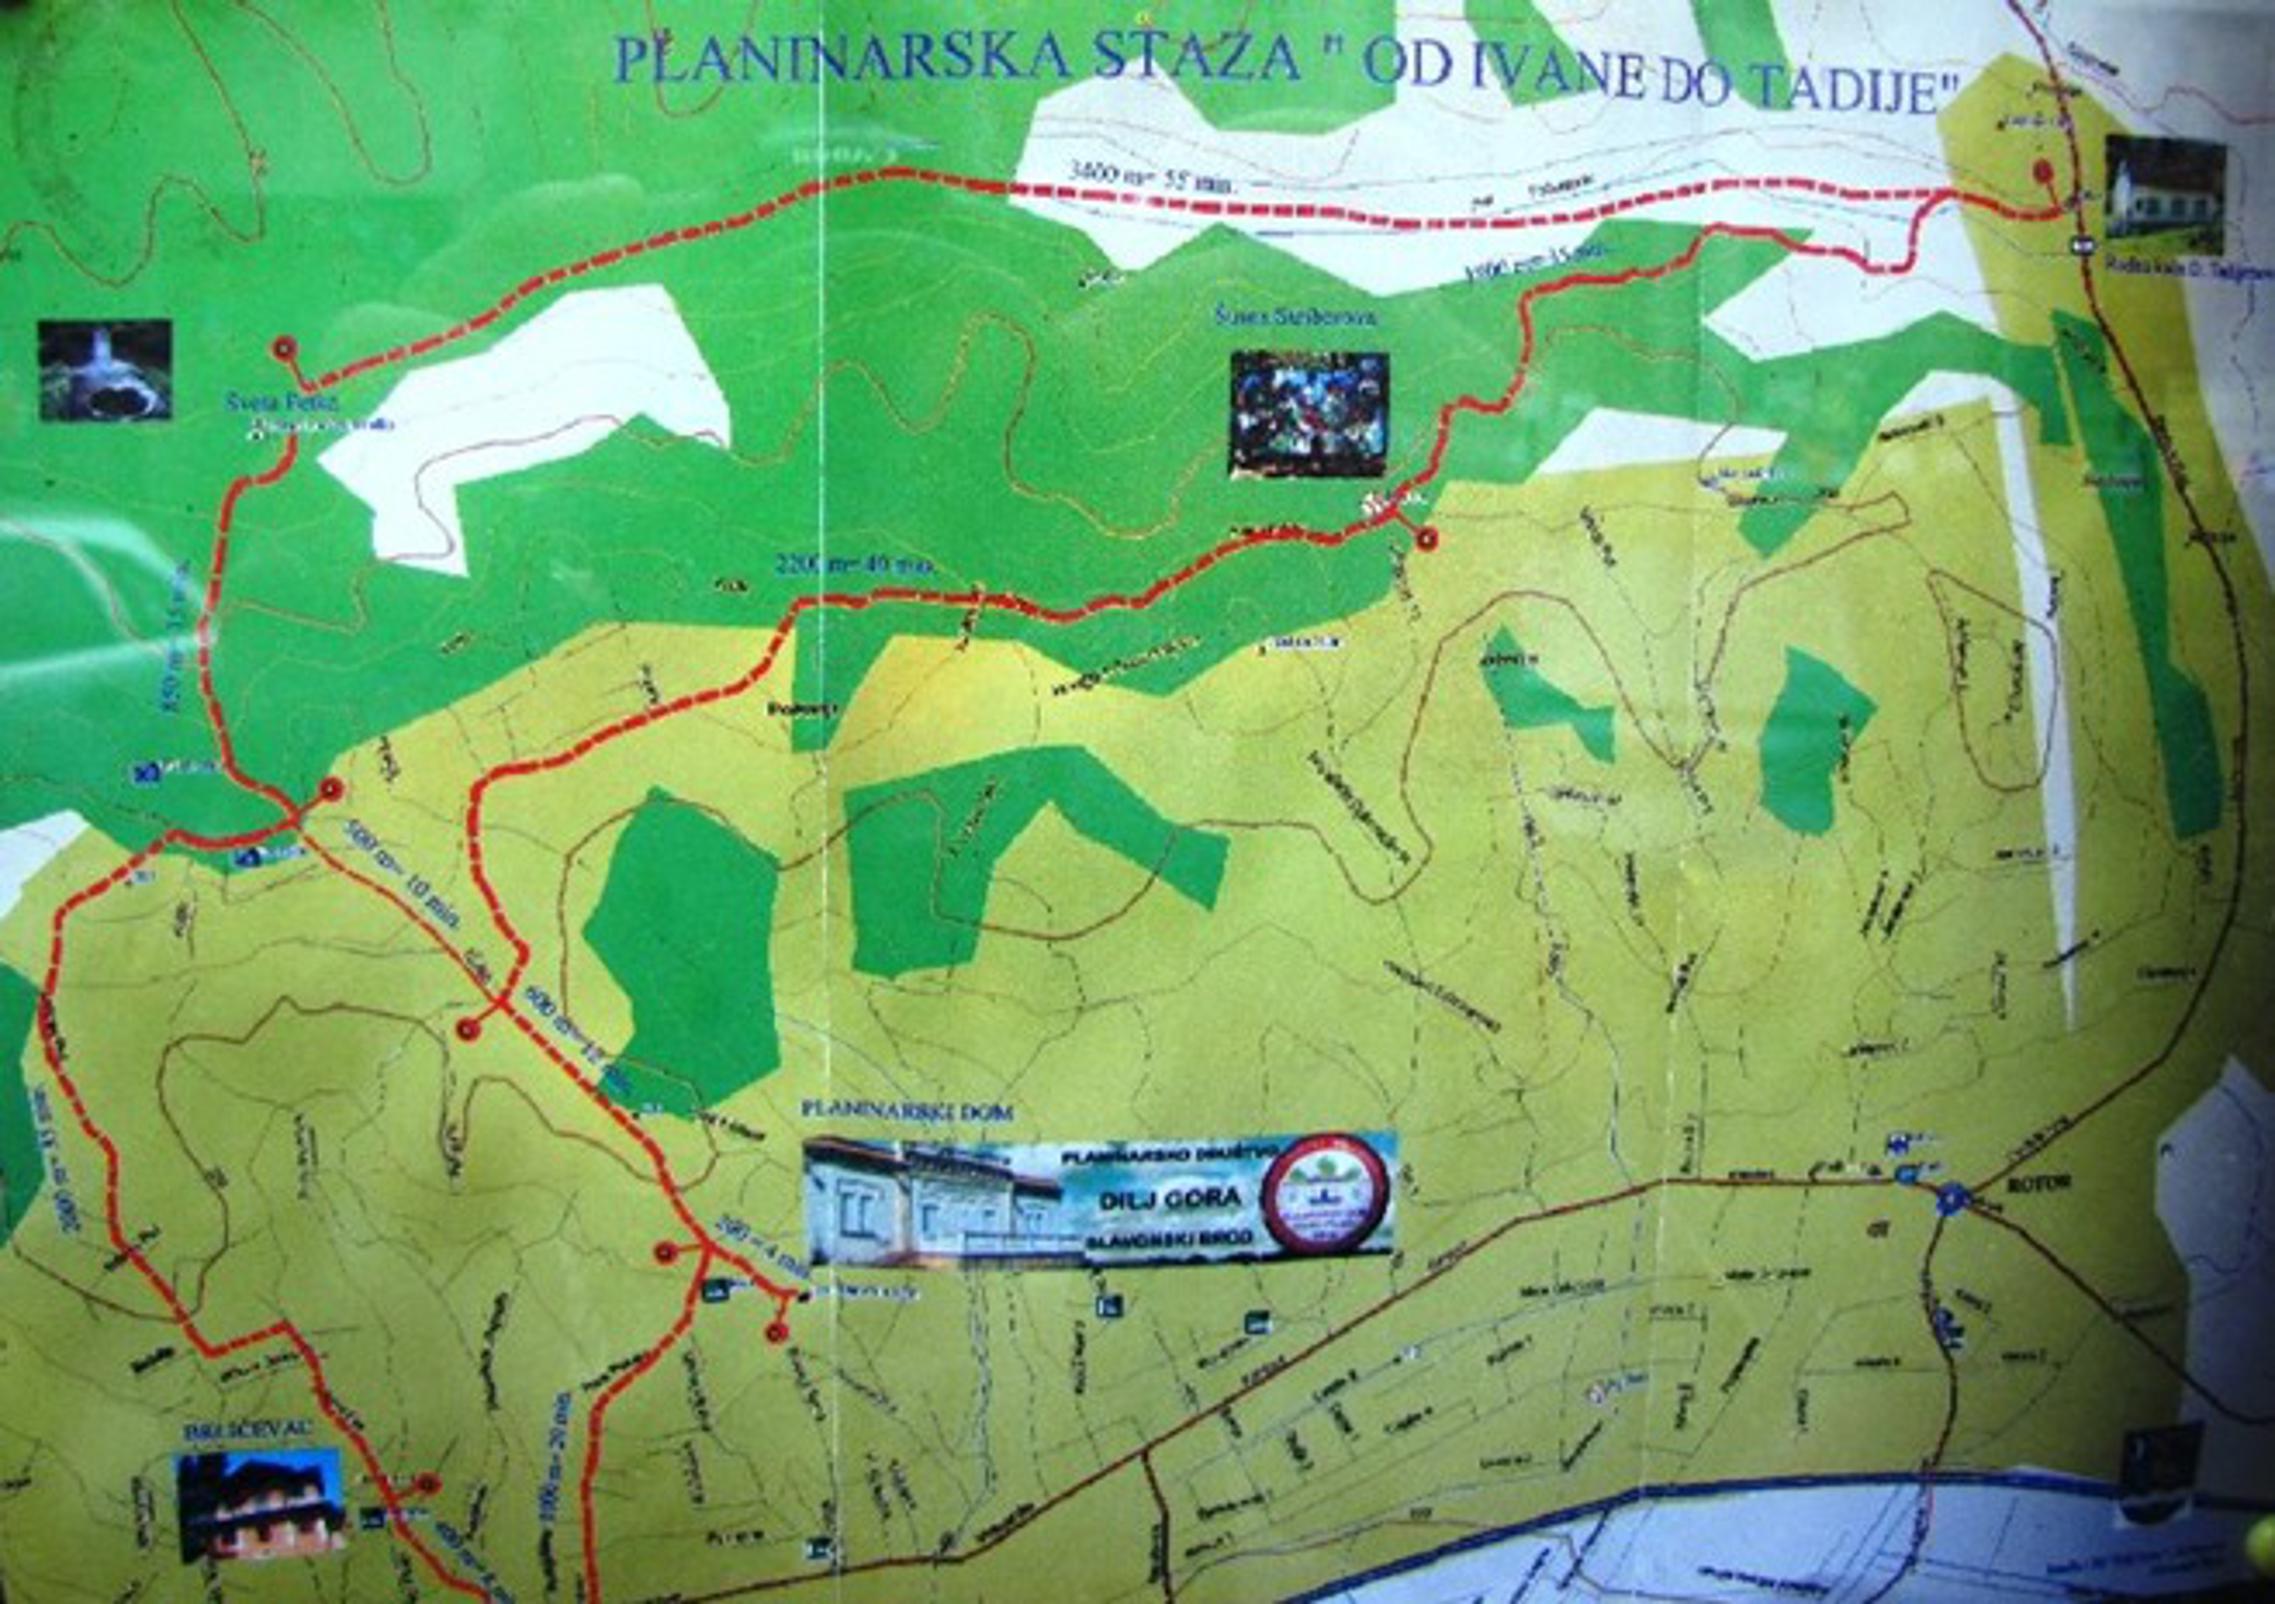 Crvenim isprekidanim crticama označena je staza Od Ivane do Tadije